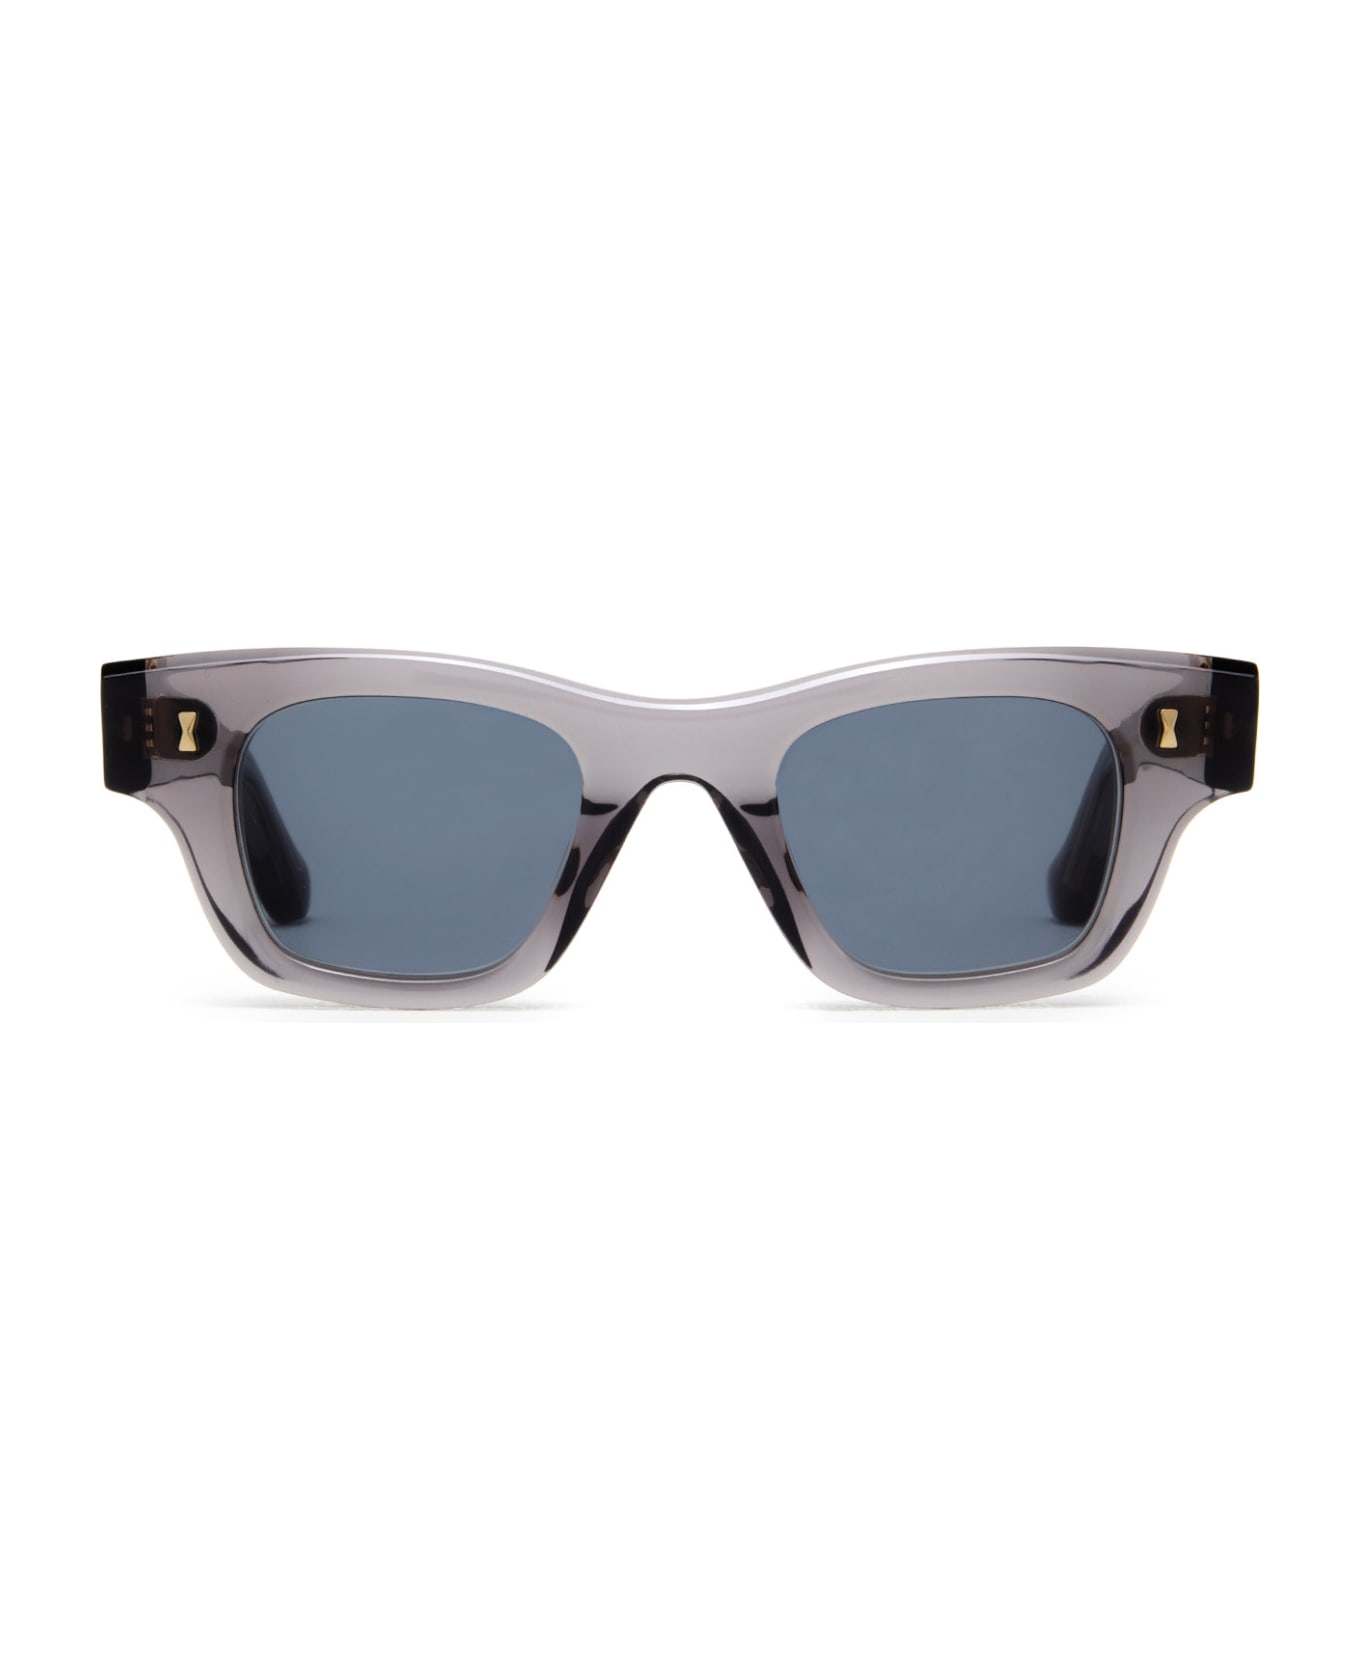 Cubitts Iceni Sun Smoke Grey Sunglasses - Smoke Grey